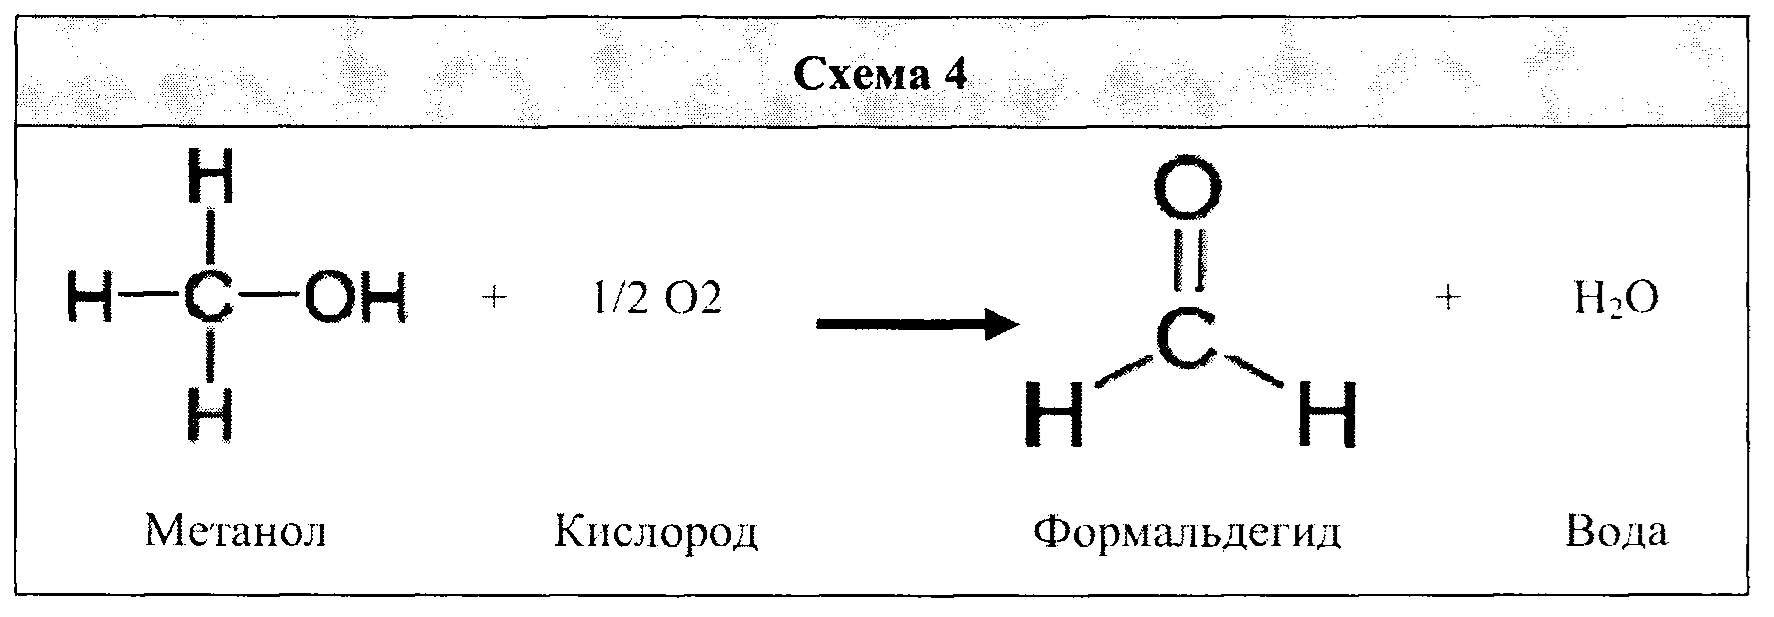 Ацетальдегид и метанол. Ацетальдегид и вода. Технологическая схема формальдегида и ацетальдегида. Ацетальдегид и метанол реакция. C2h4 продукт реакции